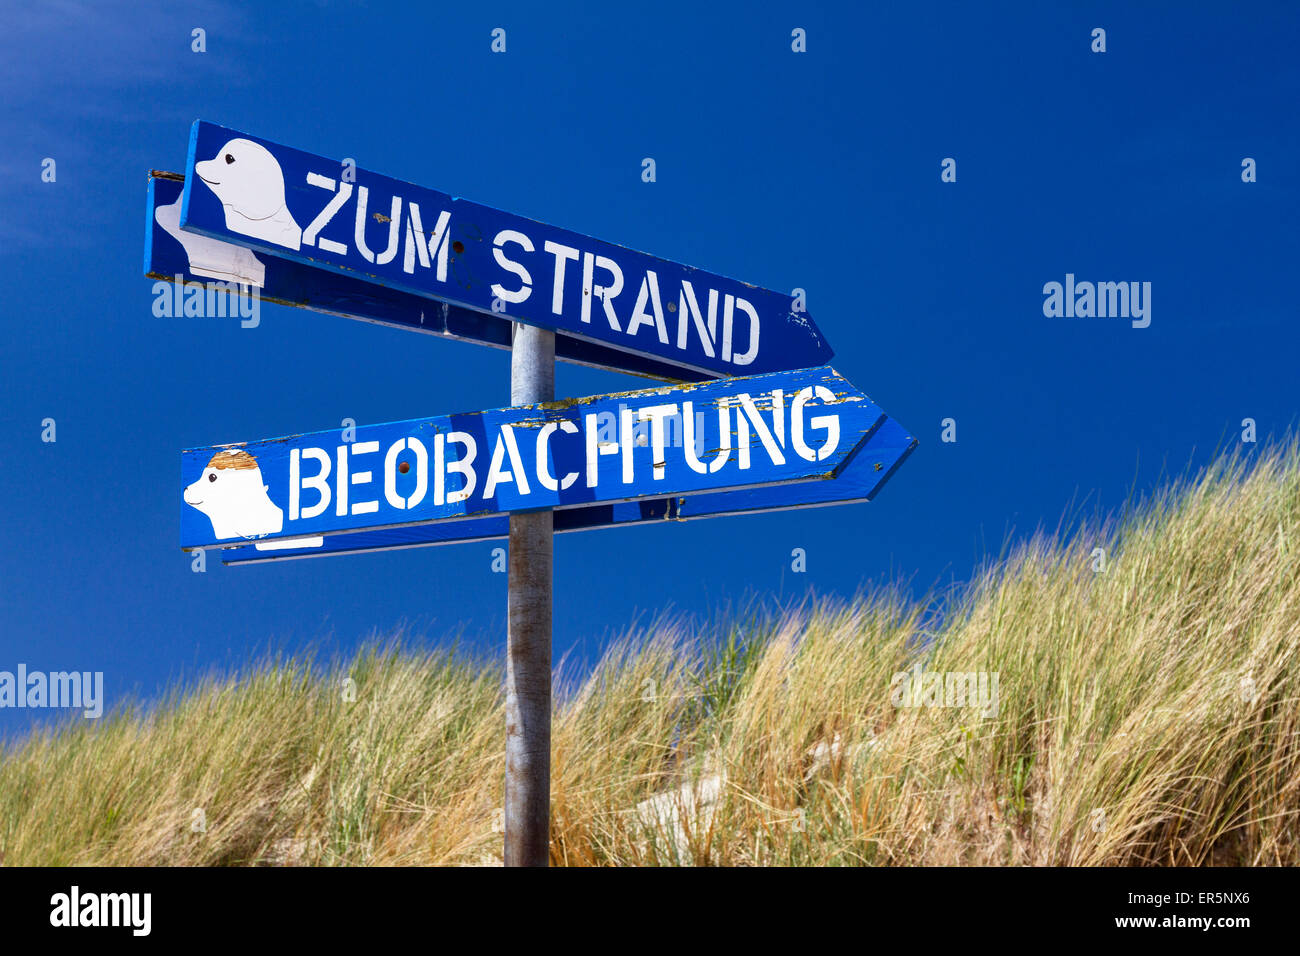 Wegweiser für den Strand und Dichtung Beobachtung Punkt, Osterhook, Insel Langeoog, Nordsee, Ostfriesischen Inseln, Ostfriesland, niedrig Stockfoto